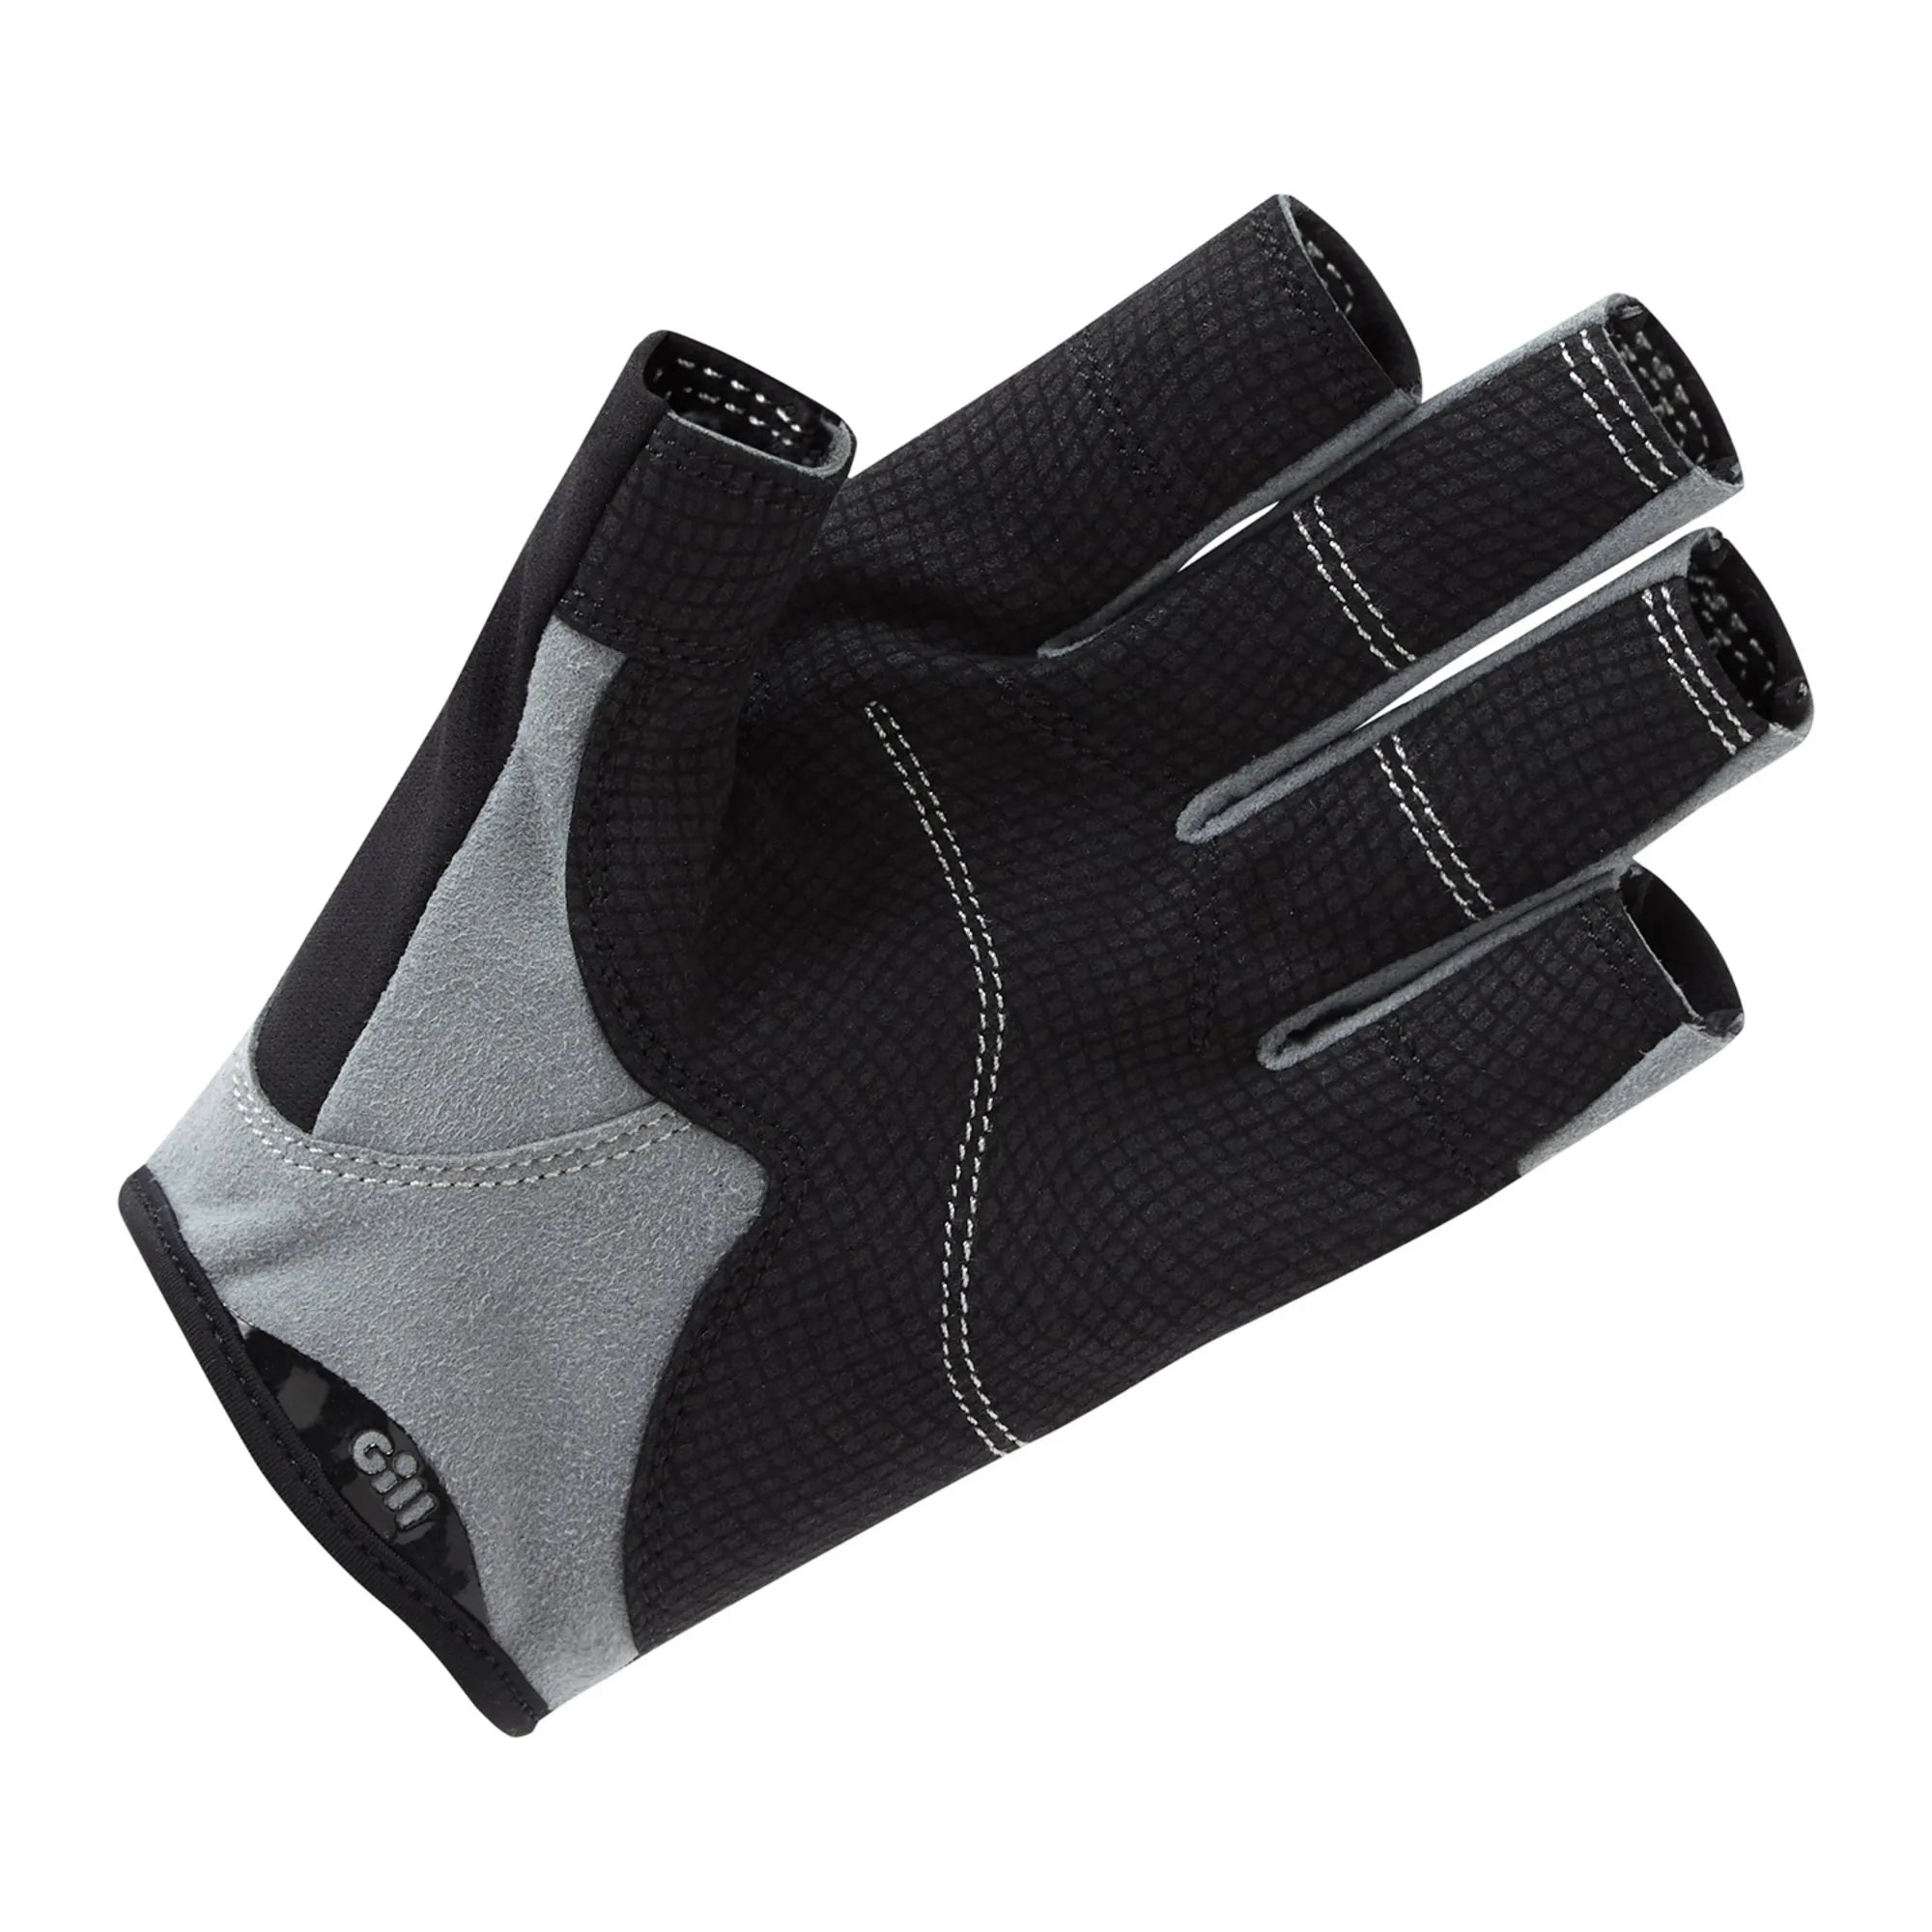 Deckhand Gloves (Short Finger) - Black